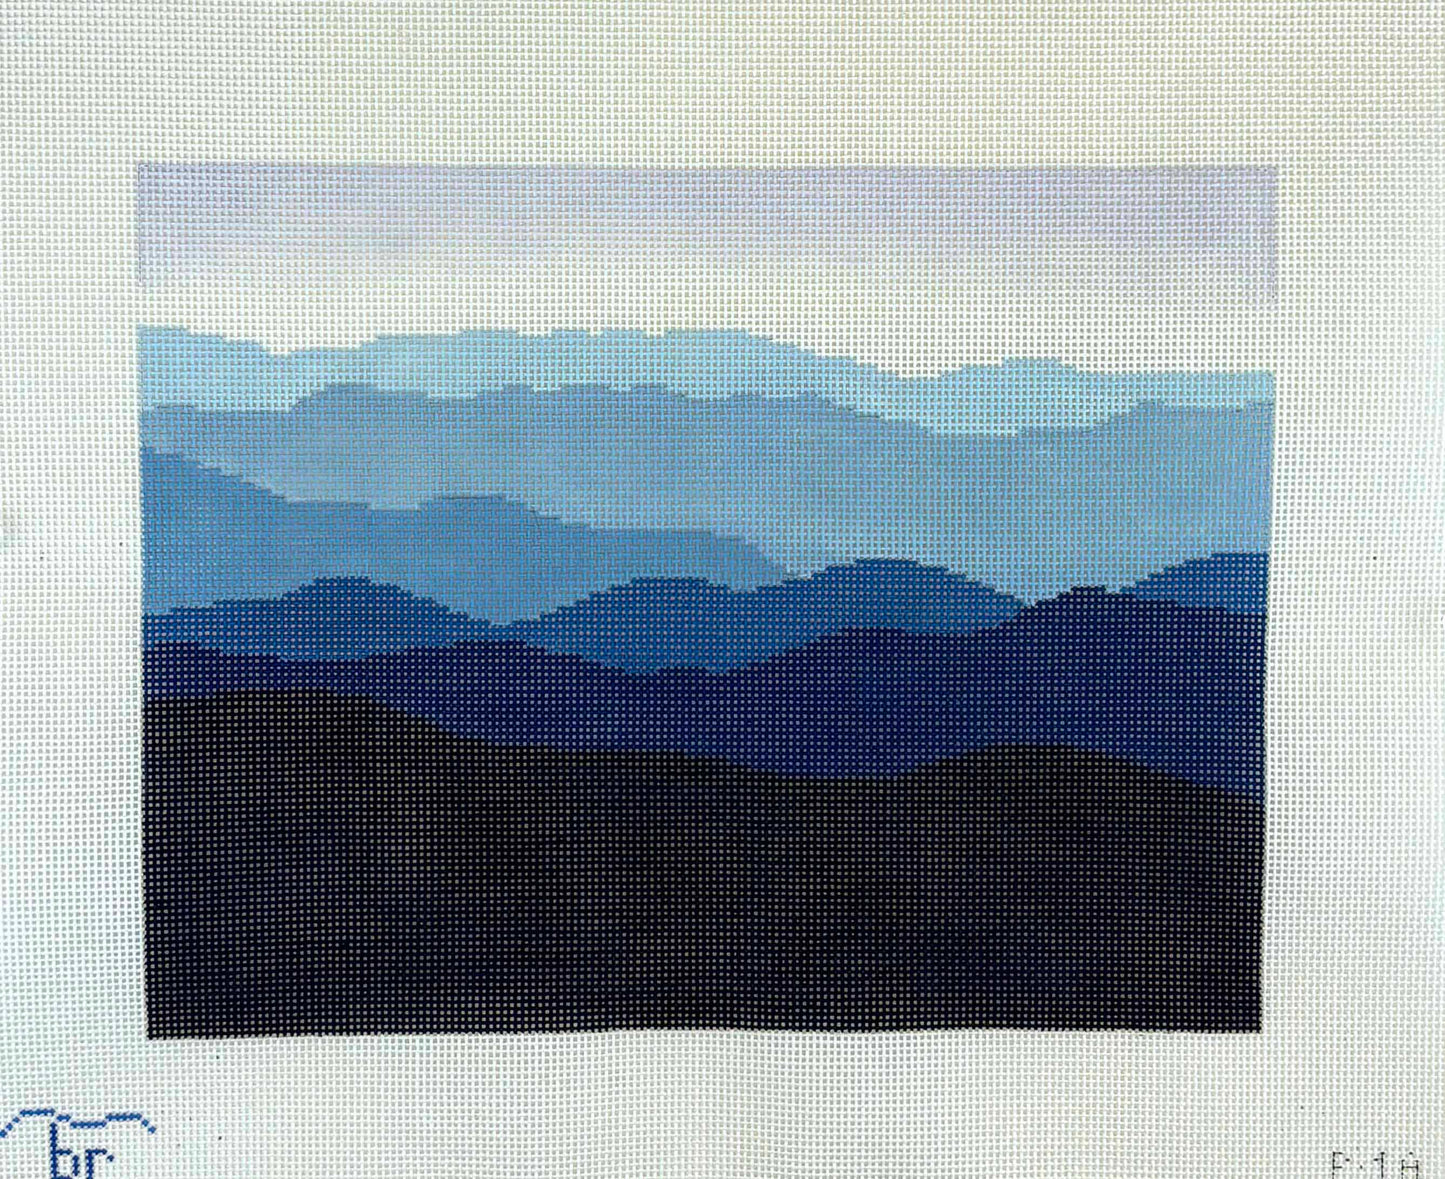 Blue Ridge Mountains - large